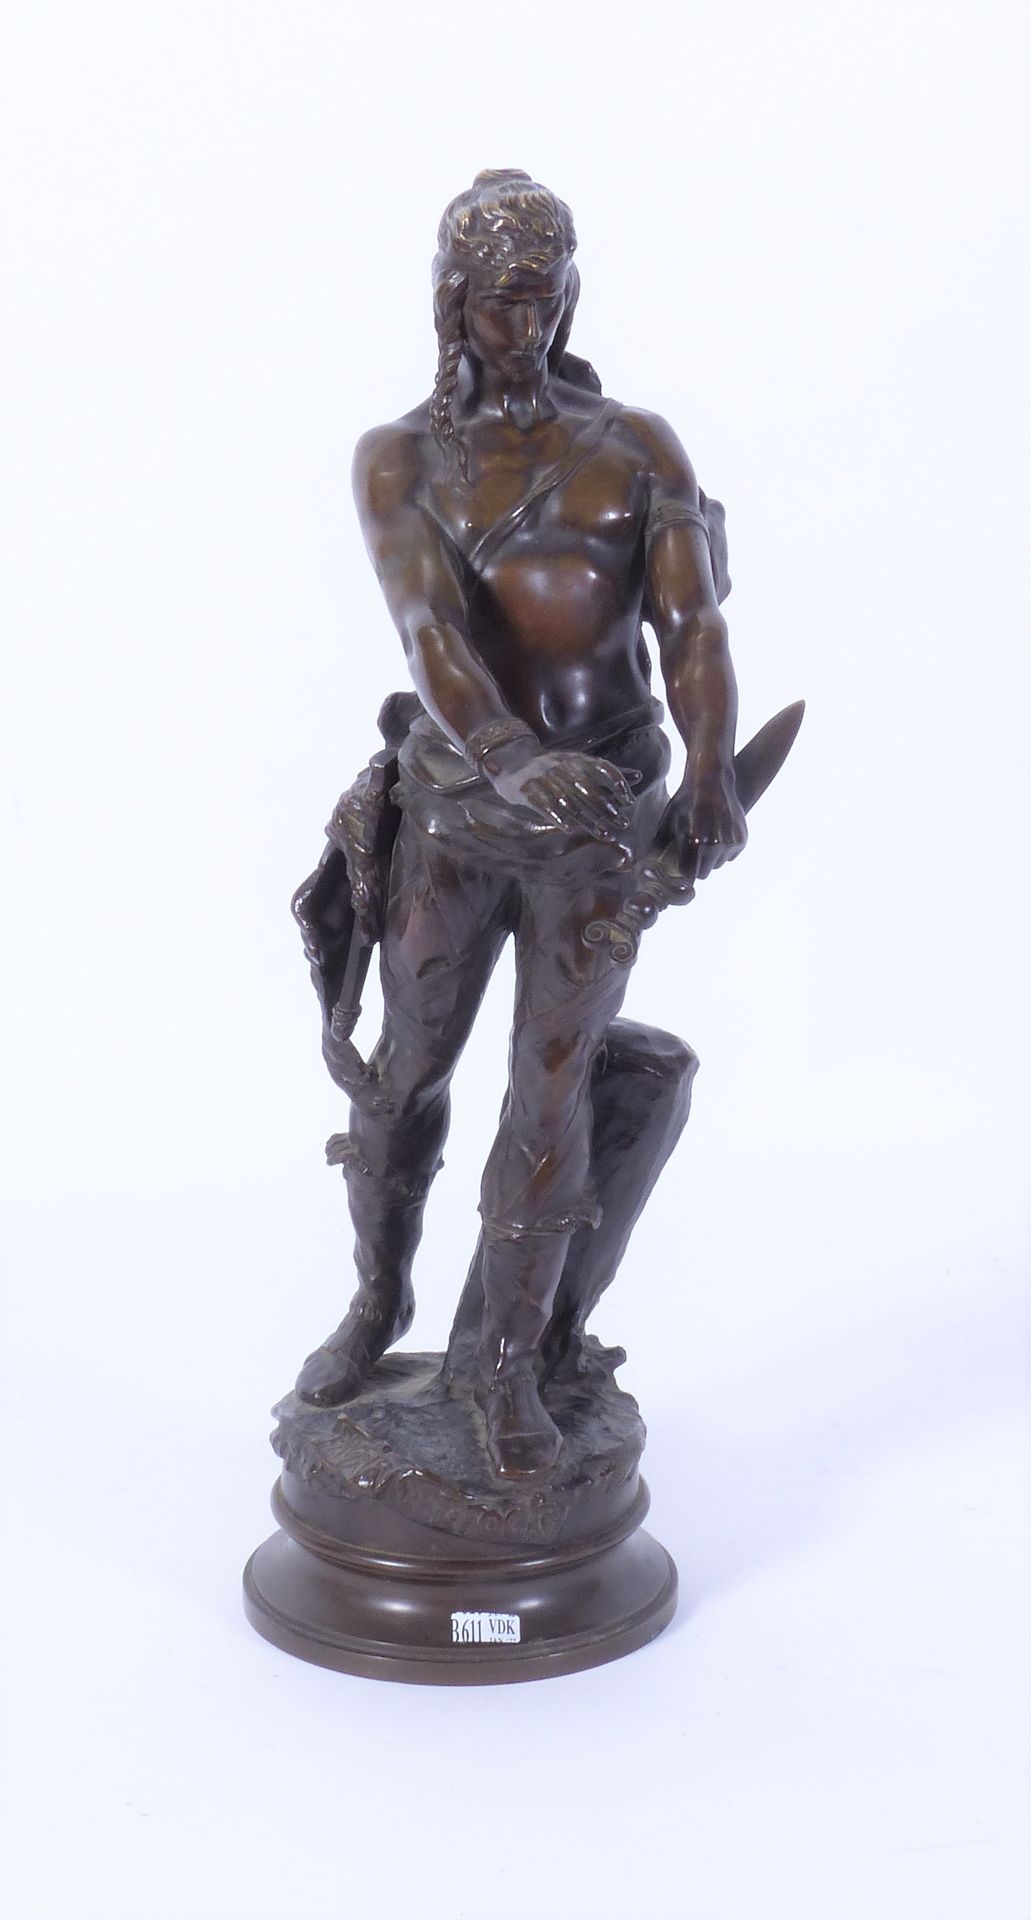 MASSOULLE André Paul Arthur (1851 - 1901) "Pro Aris et Focis" in bronze with bro&hellip;